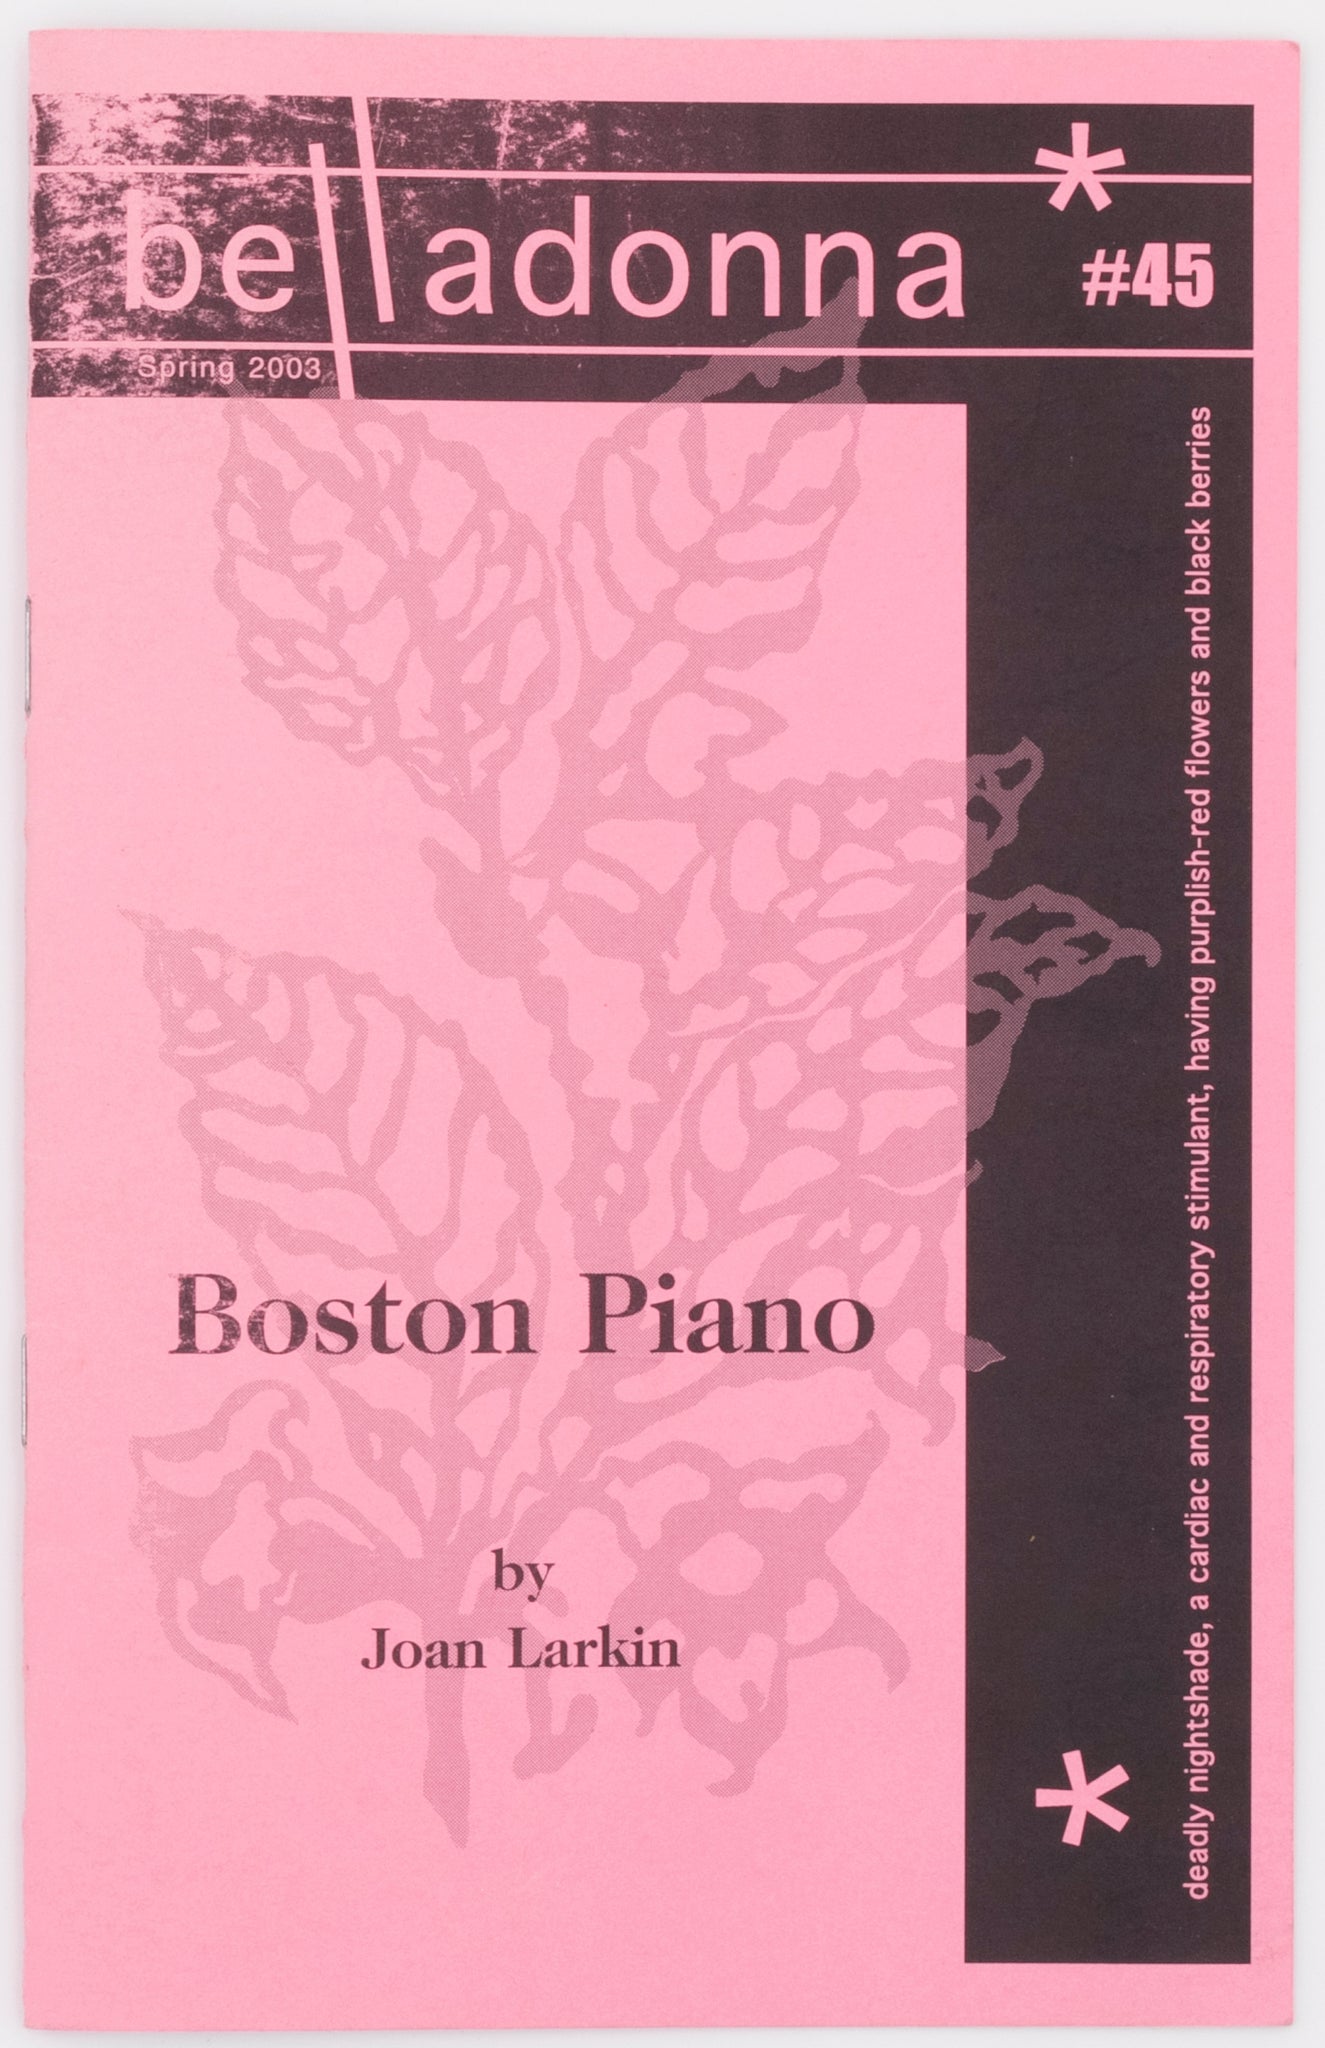 Boston Piano (Belladonna* #45)